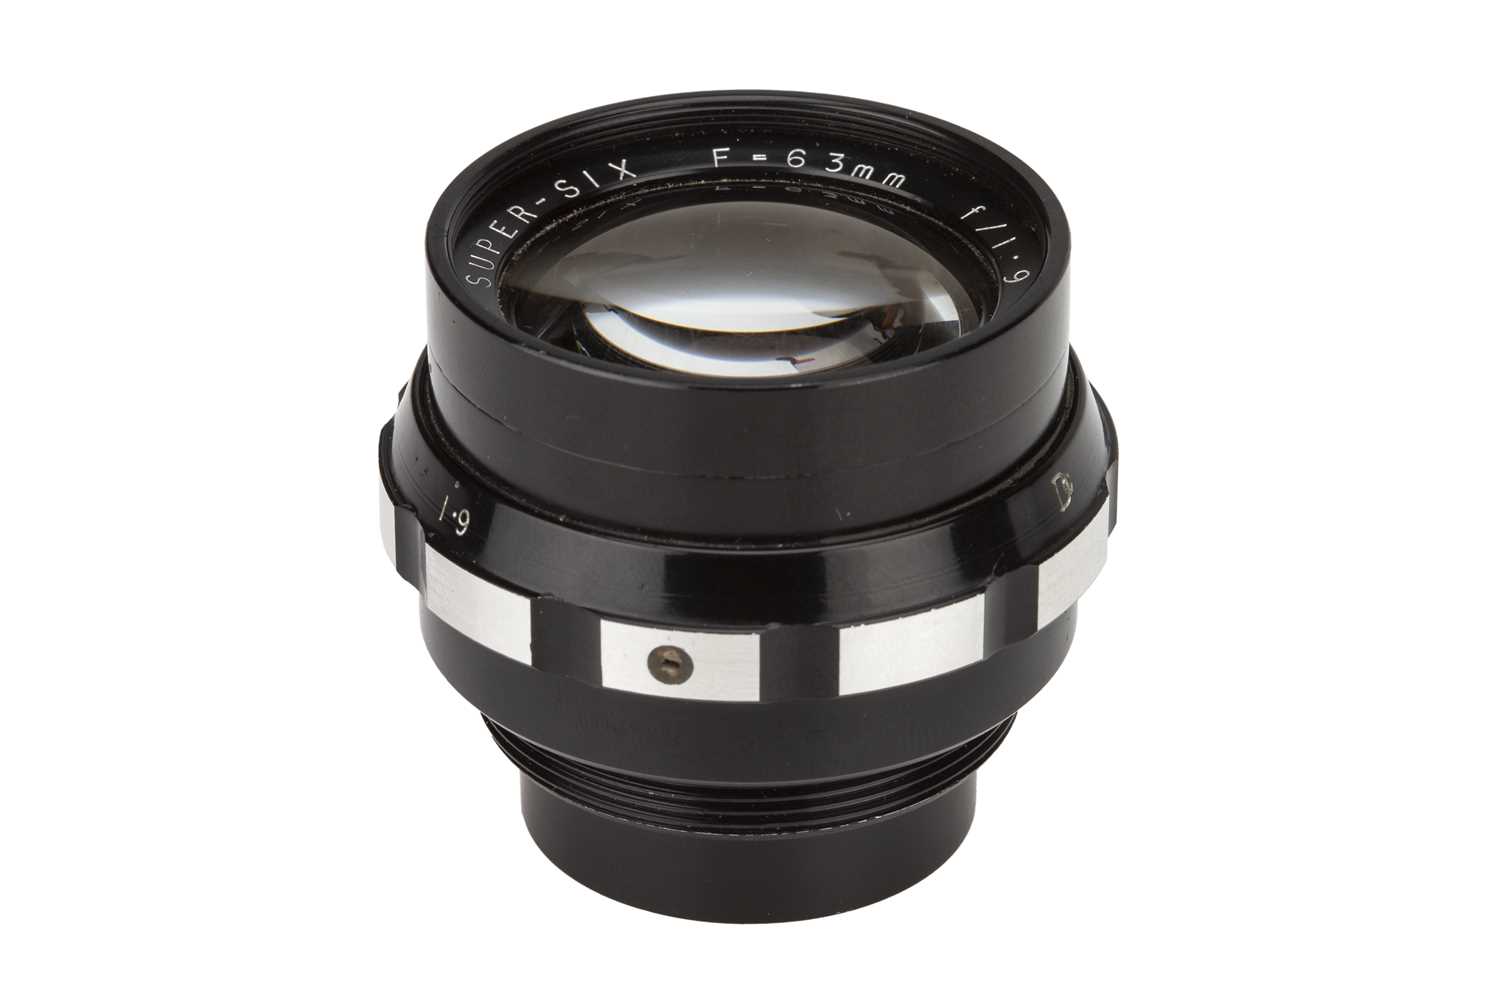 Lot 103 - A Dallmeyer Super Six f/1.9 63mm Lens